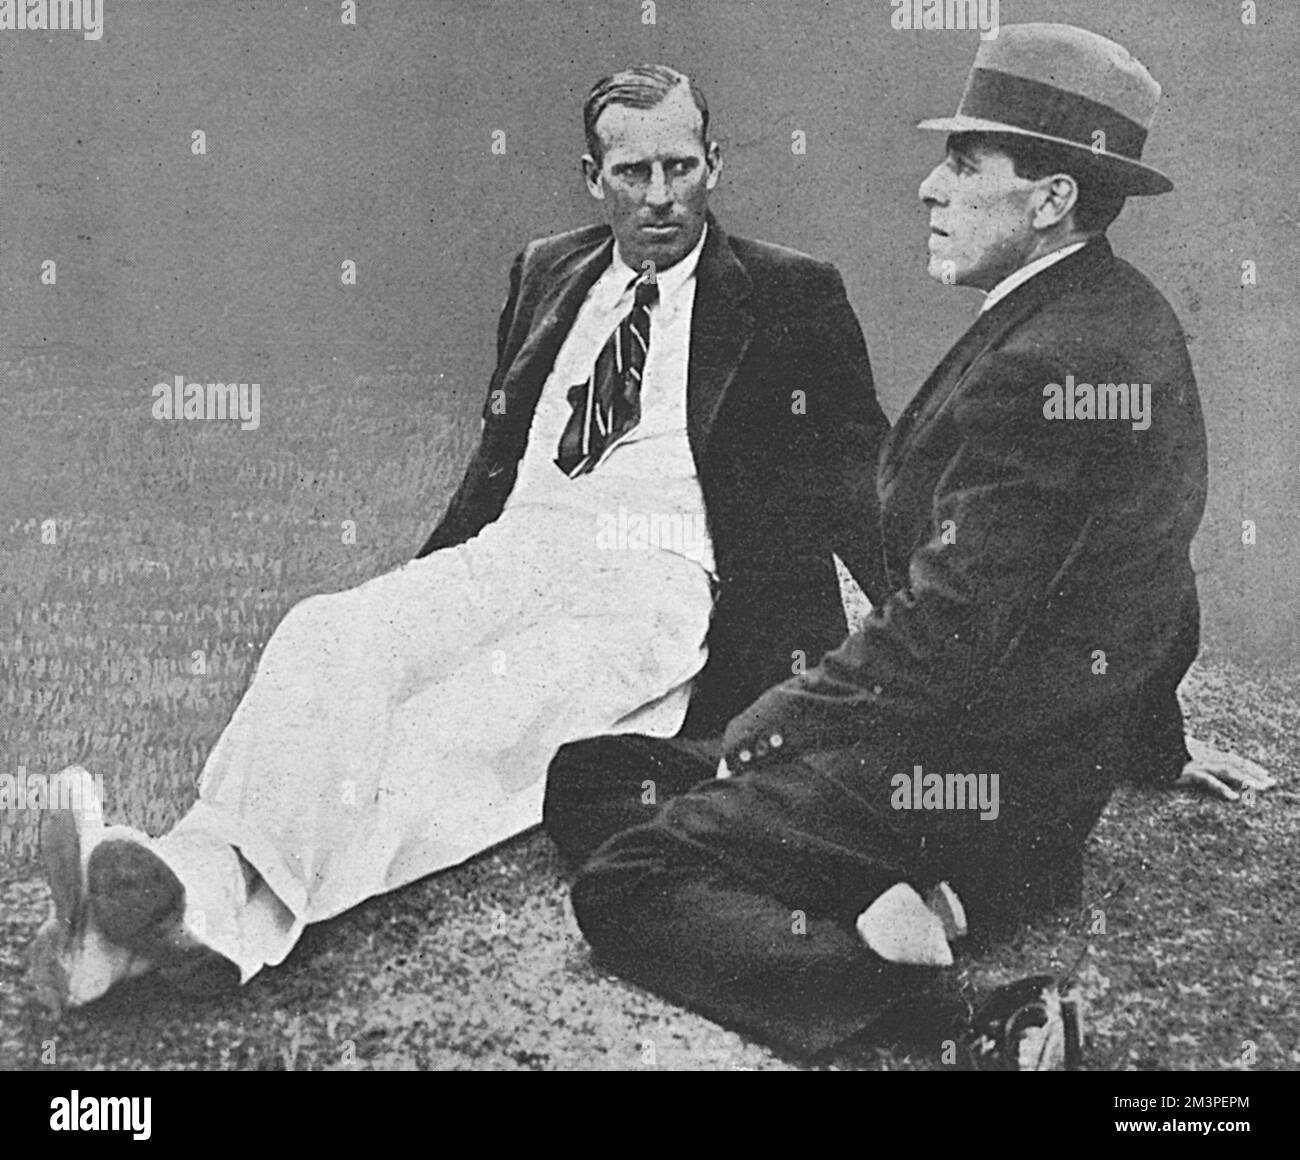 Anthony Wilding e Norman Brookes come "Gentlemen in waiting" sul tempo al campionato di tennis Wimbledon 1914 nel luglio 1914. Wilding, che aveva vinto gli ultimi quattro uomini consecutivi nel campionato di single, è stato battuto in finale quell'anno da Brookes. Fu ucciso il maggio seguente nella battaglia di Aubers Ridge. Data: 1914 Foto Stock